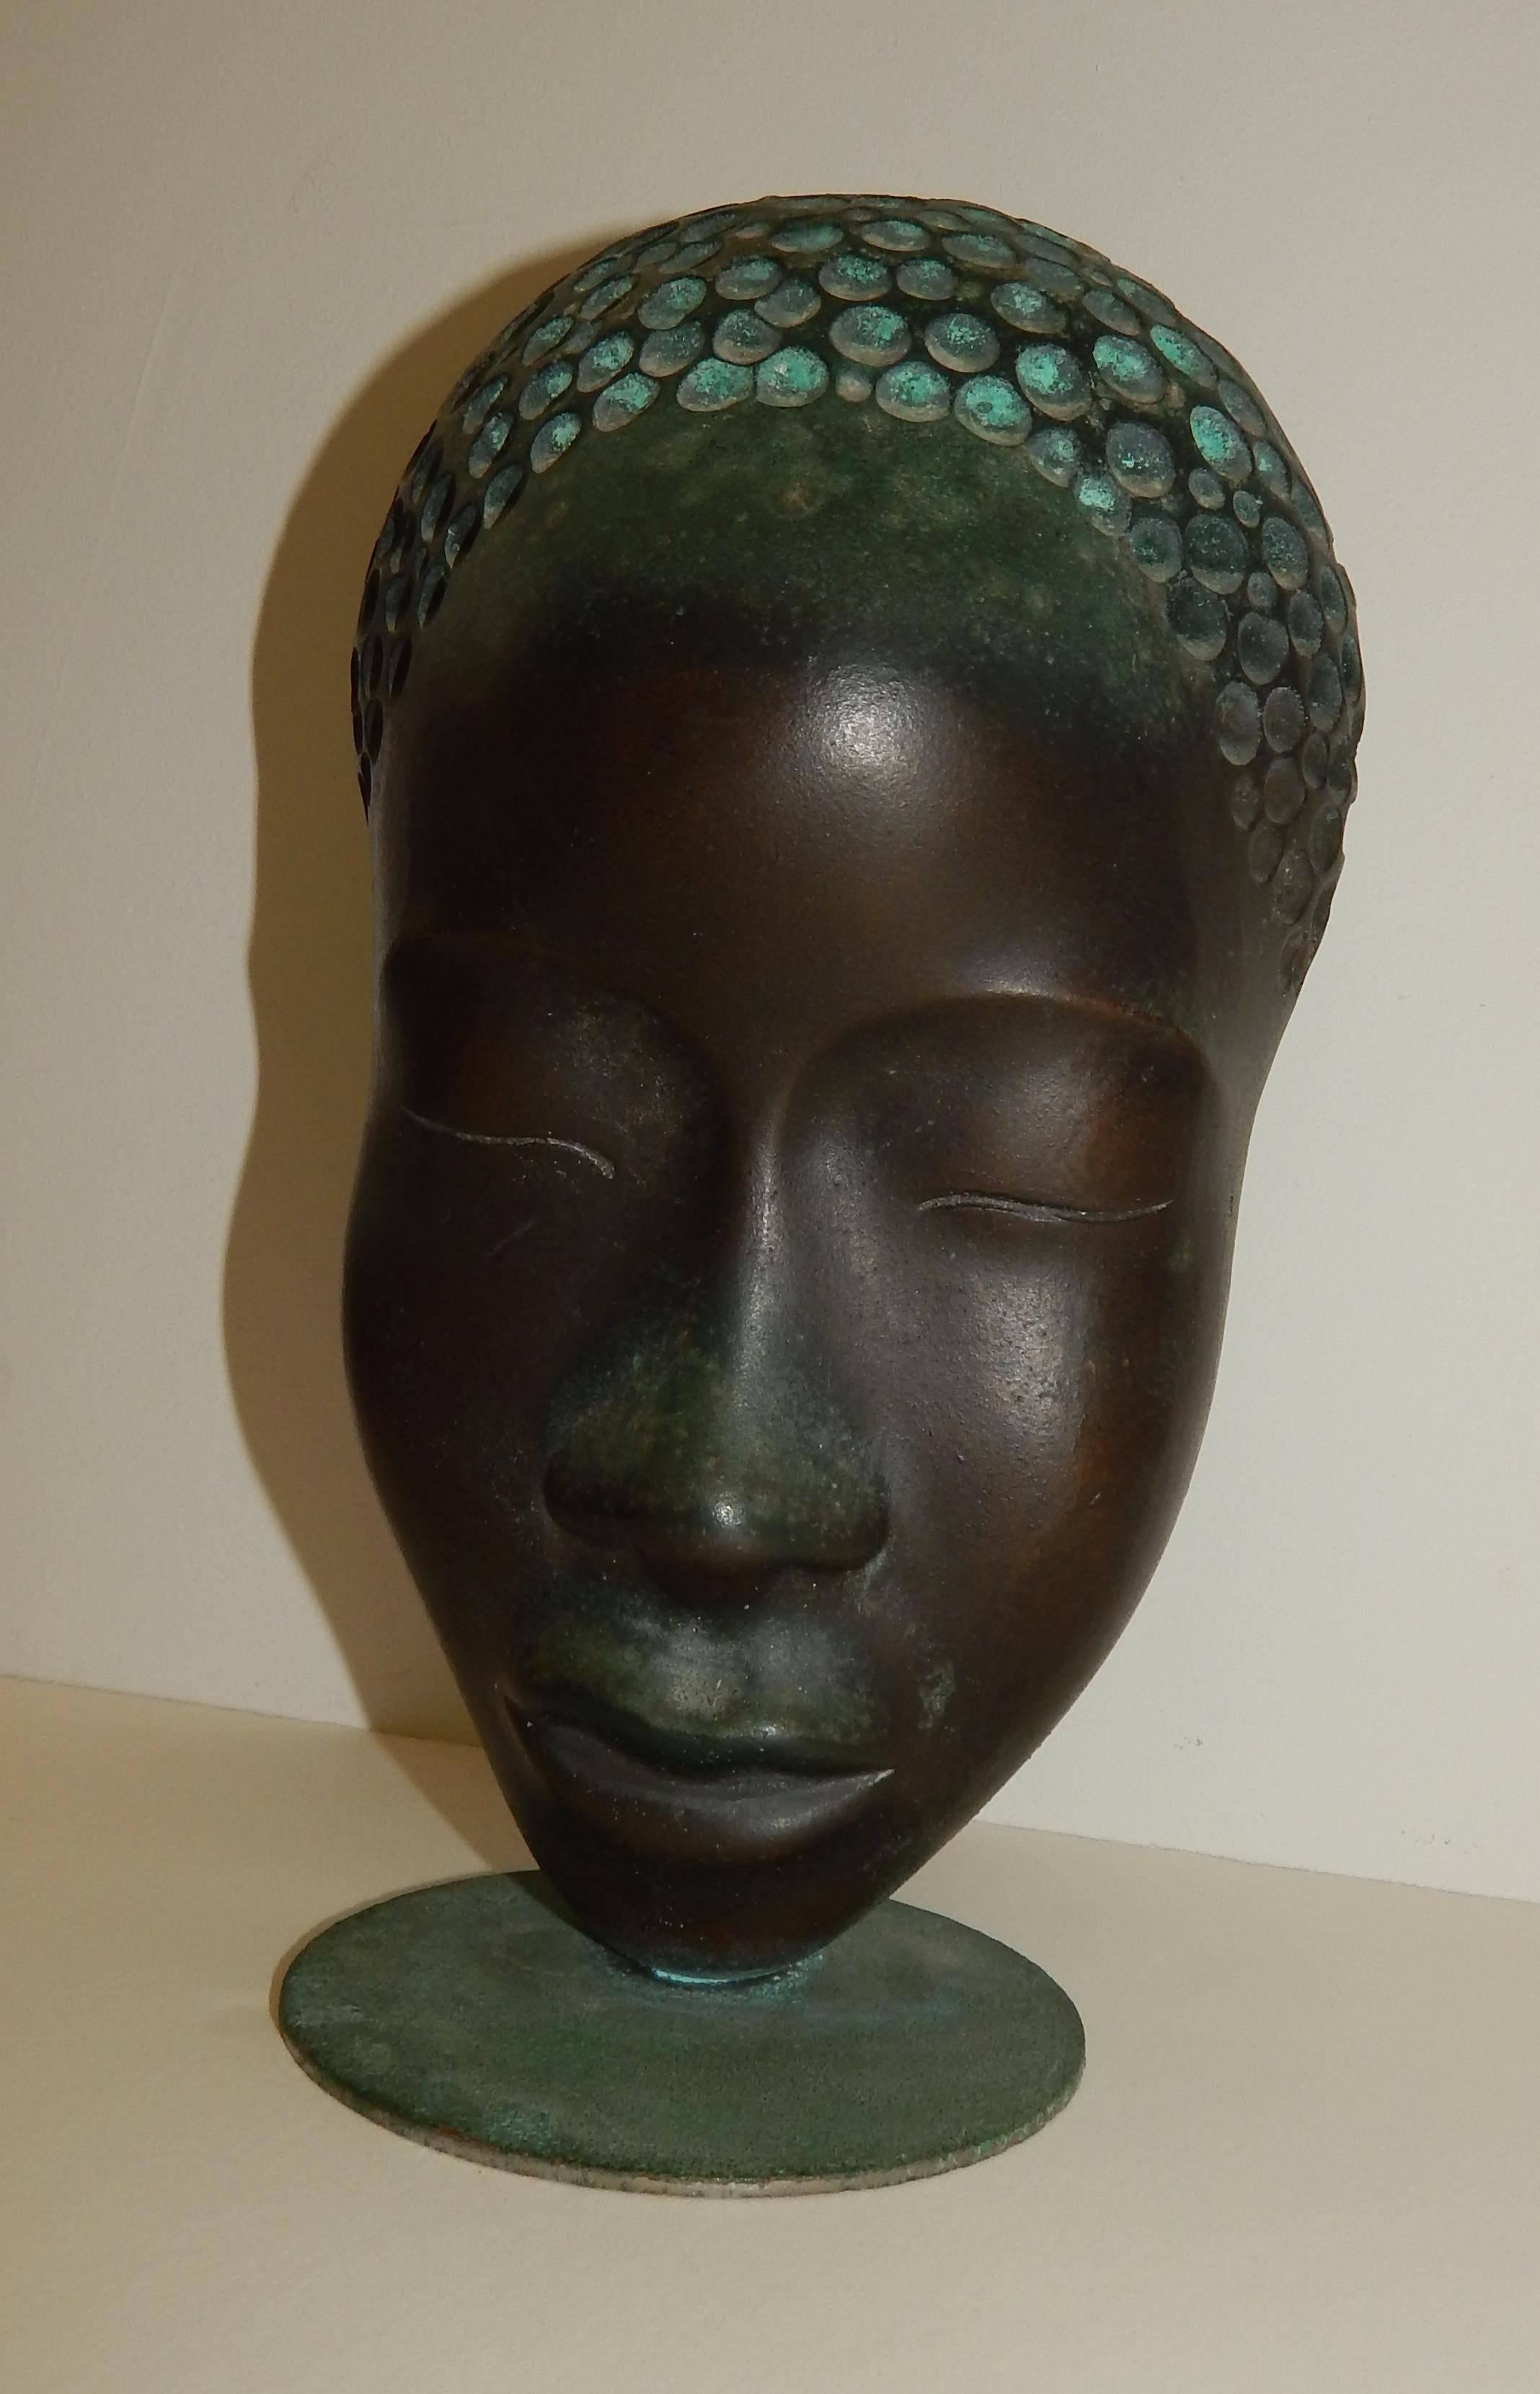 Hagenauer Femme africaine, portrait en bronze. Belle patine.
Sujet noir. Marqué Atelier Hagenauer Wien, fabriqué en Autriche.
Dimensions : 9